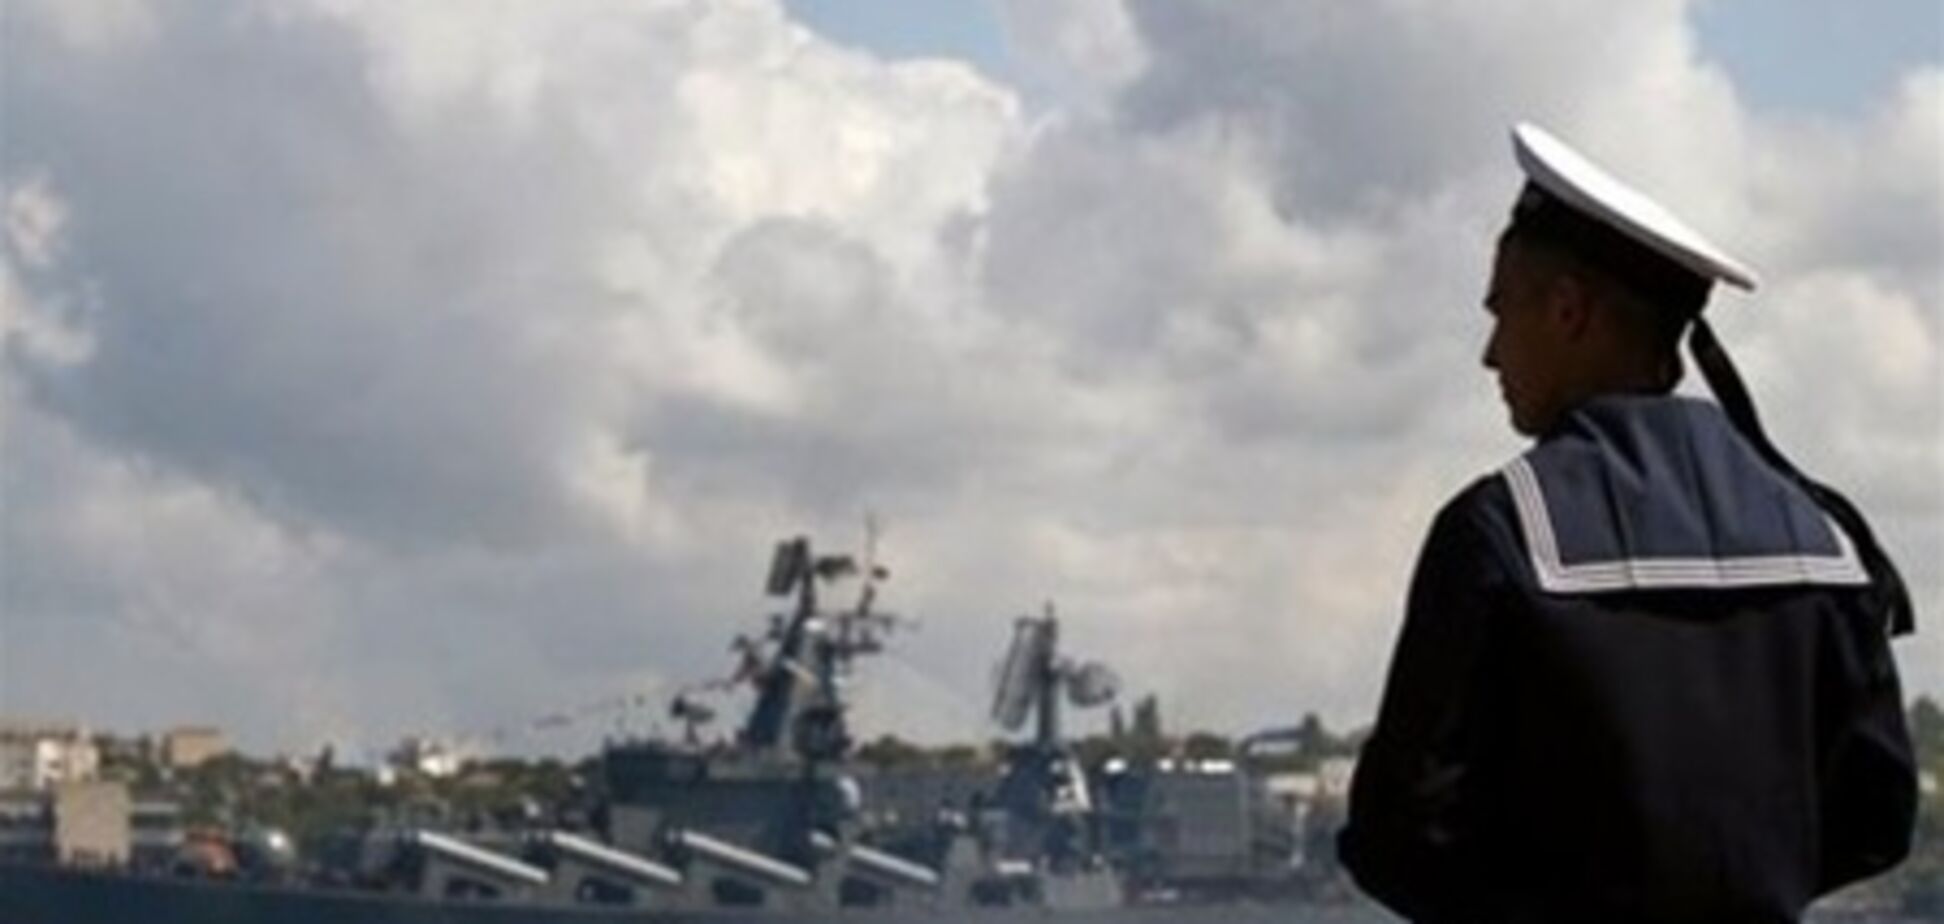 В Египте без объяснений задержали судно с 6 украинцами - СМИ